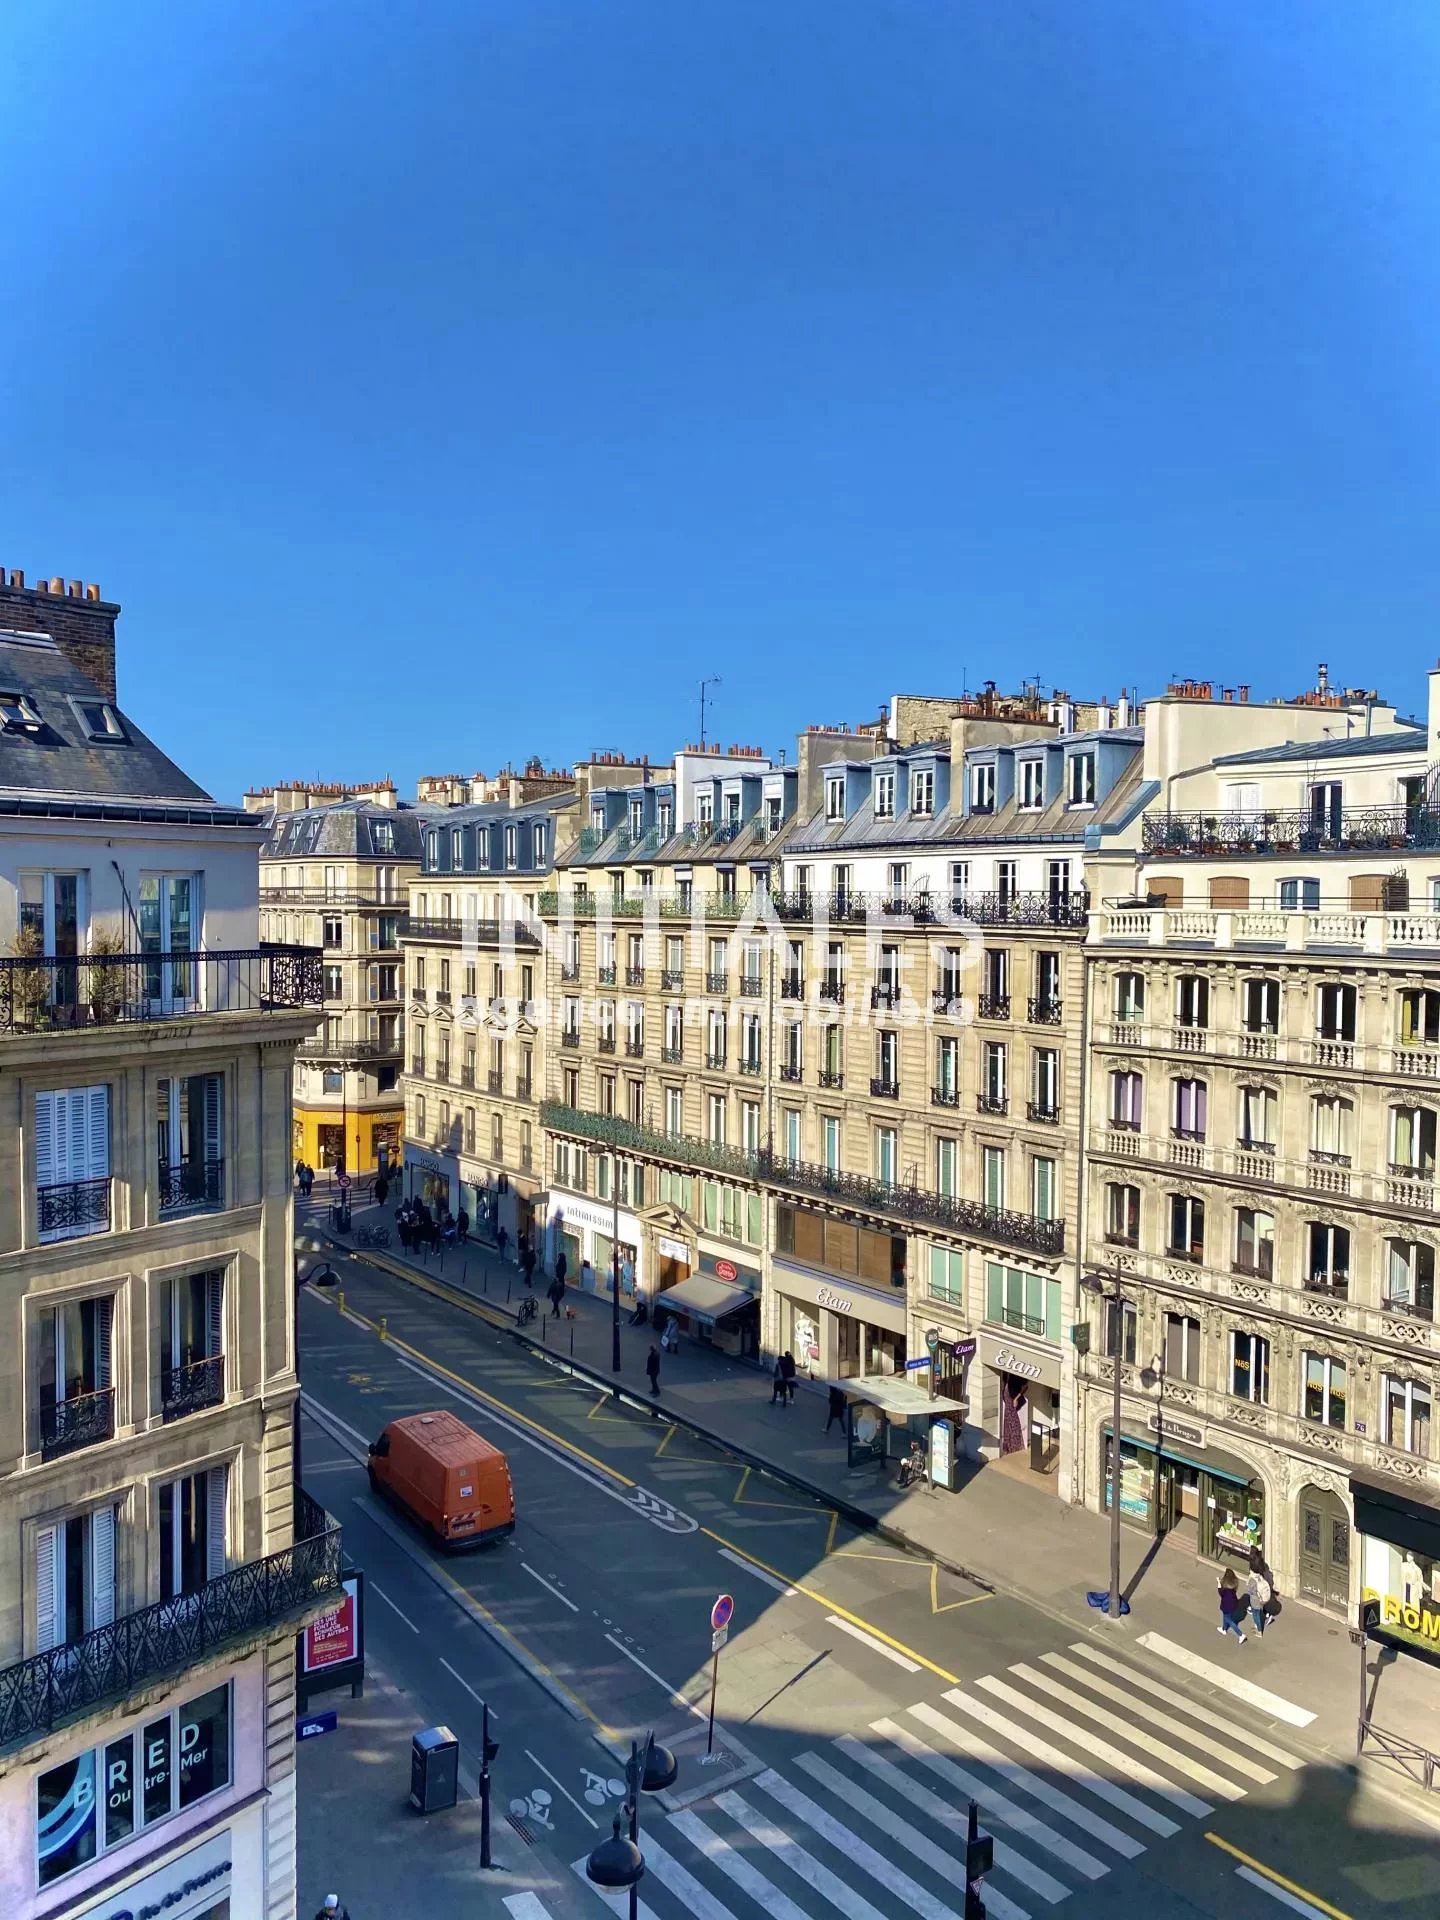 Sale Apartment - Paris 4th (Paris 4ème)